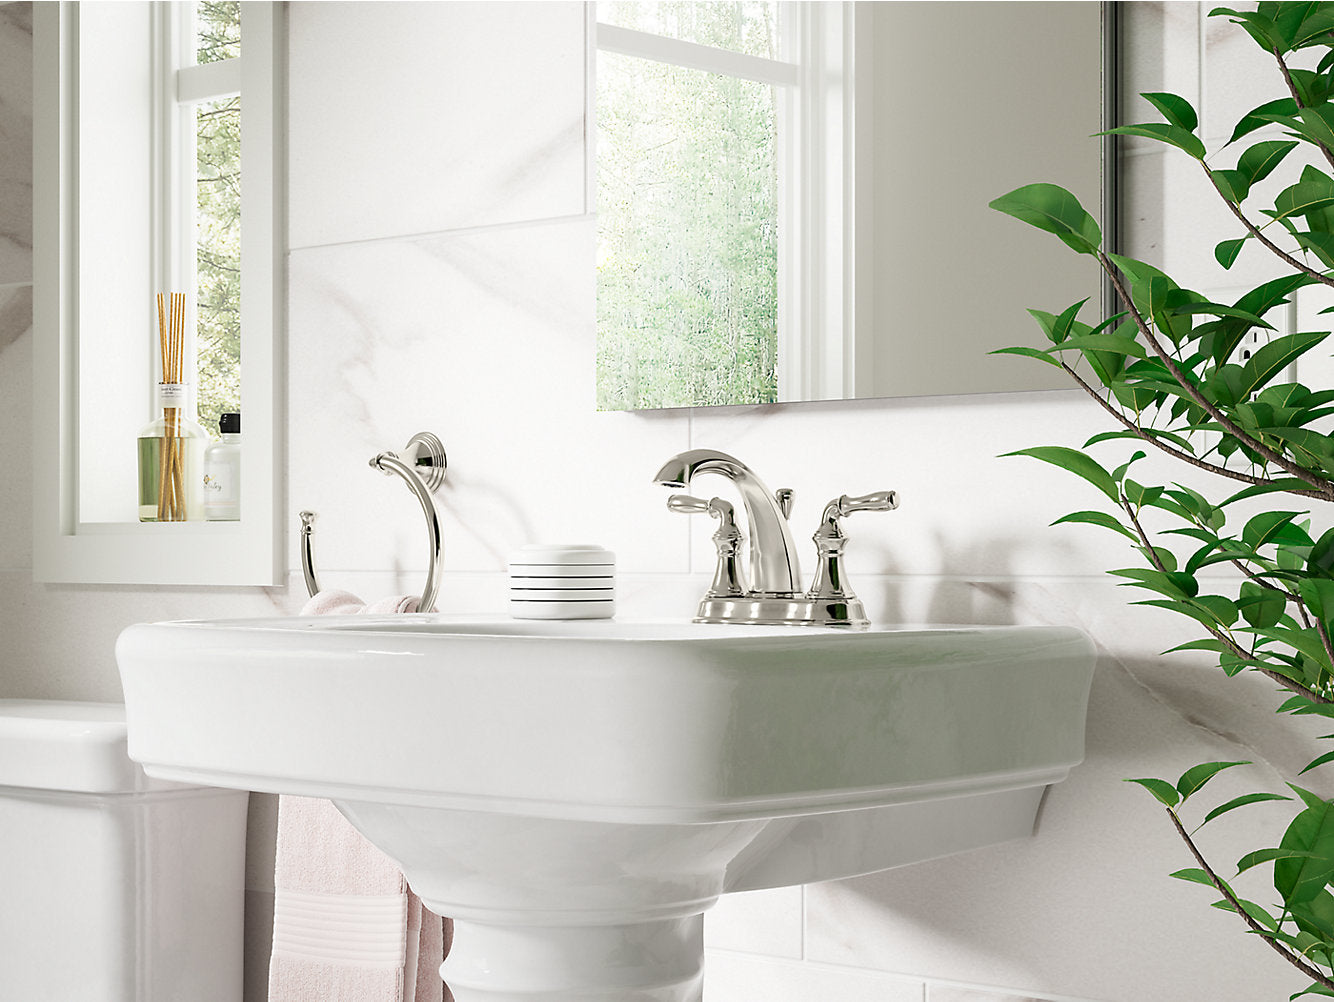 Kohler Devonshire Centerset Bathroom Sink Faucet - Vibrant Brushed Nickel